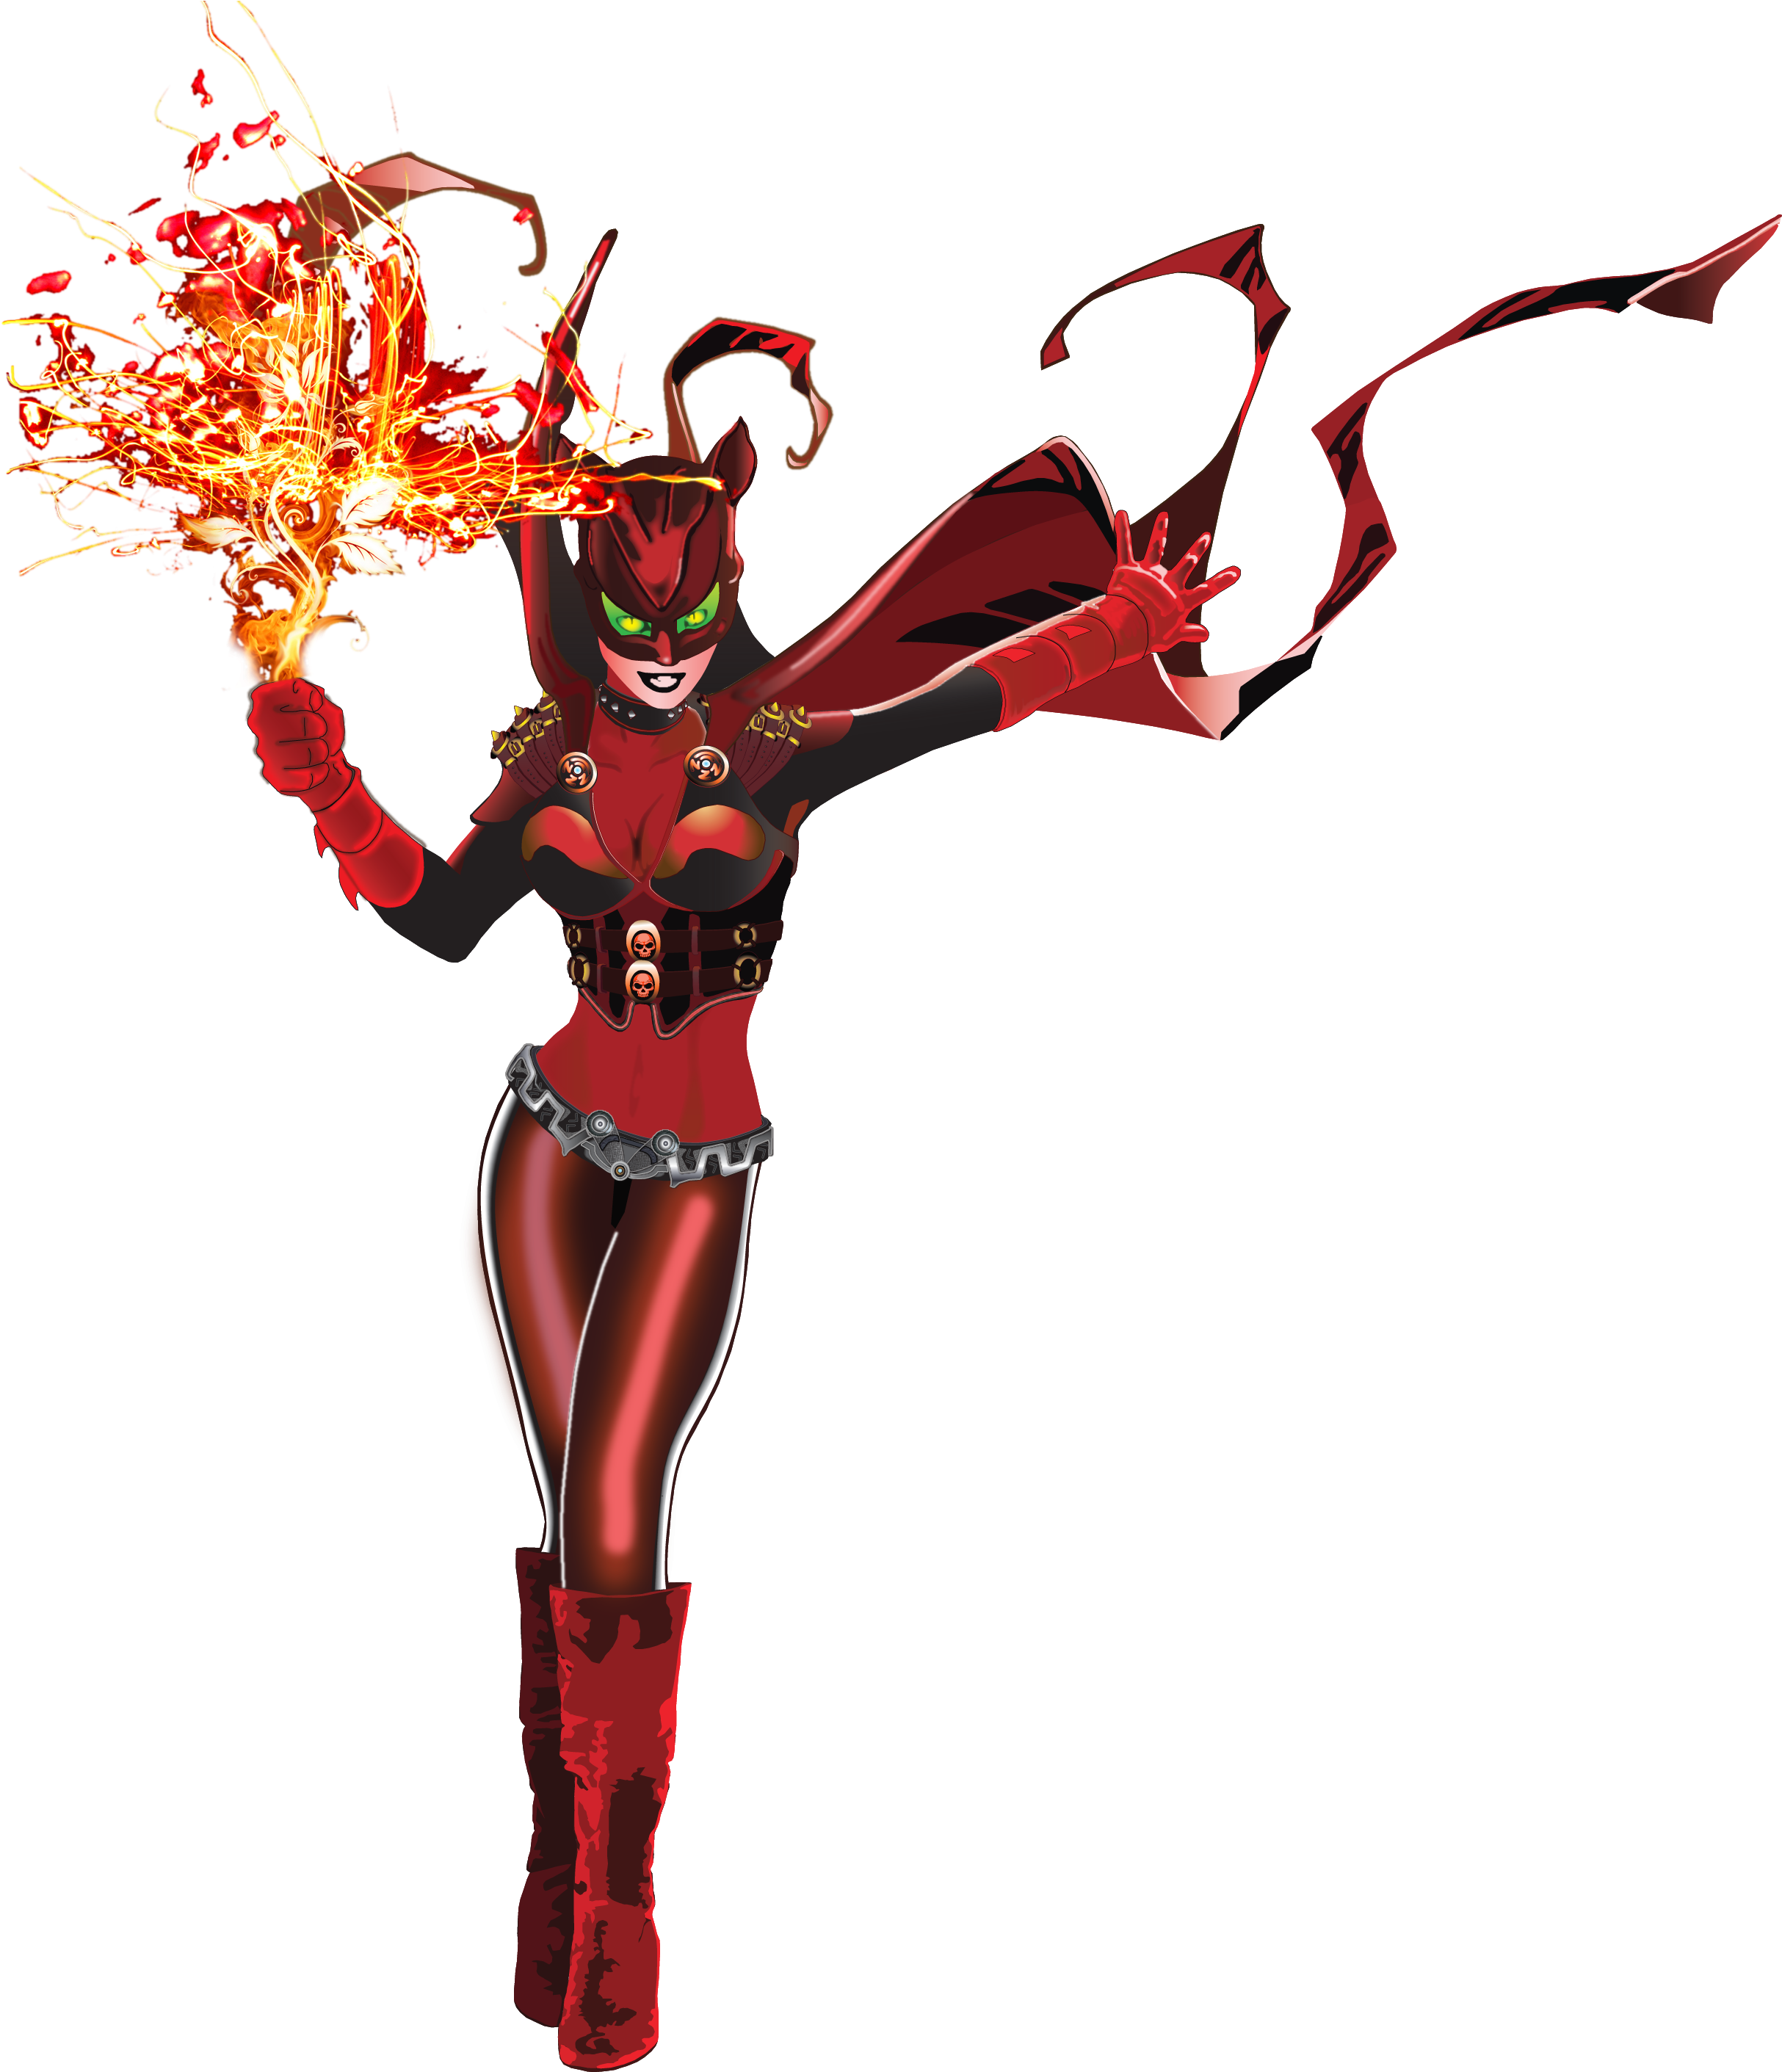 Featuring Fire Kitty - Firebird Superhero (2478x2821)